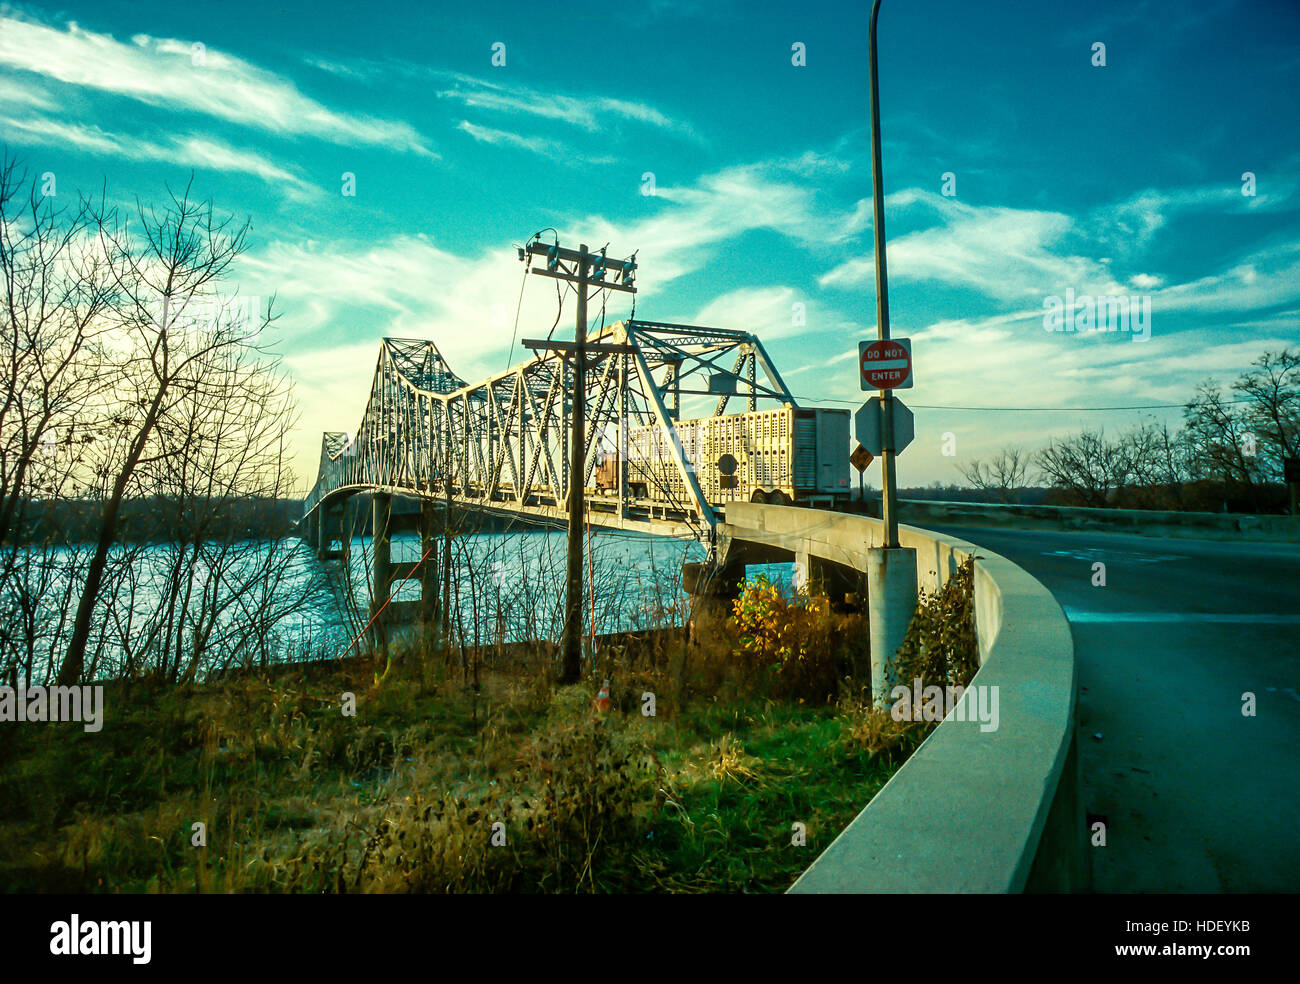 Savanna Bridge spanning the Mississippi River in Savanna, Illinois, USA Stock Photo